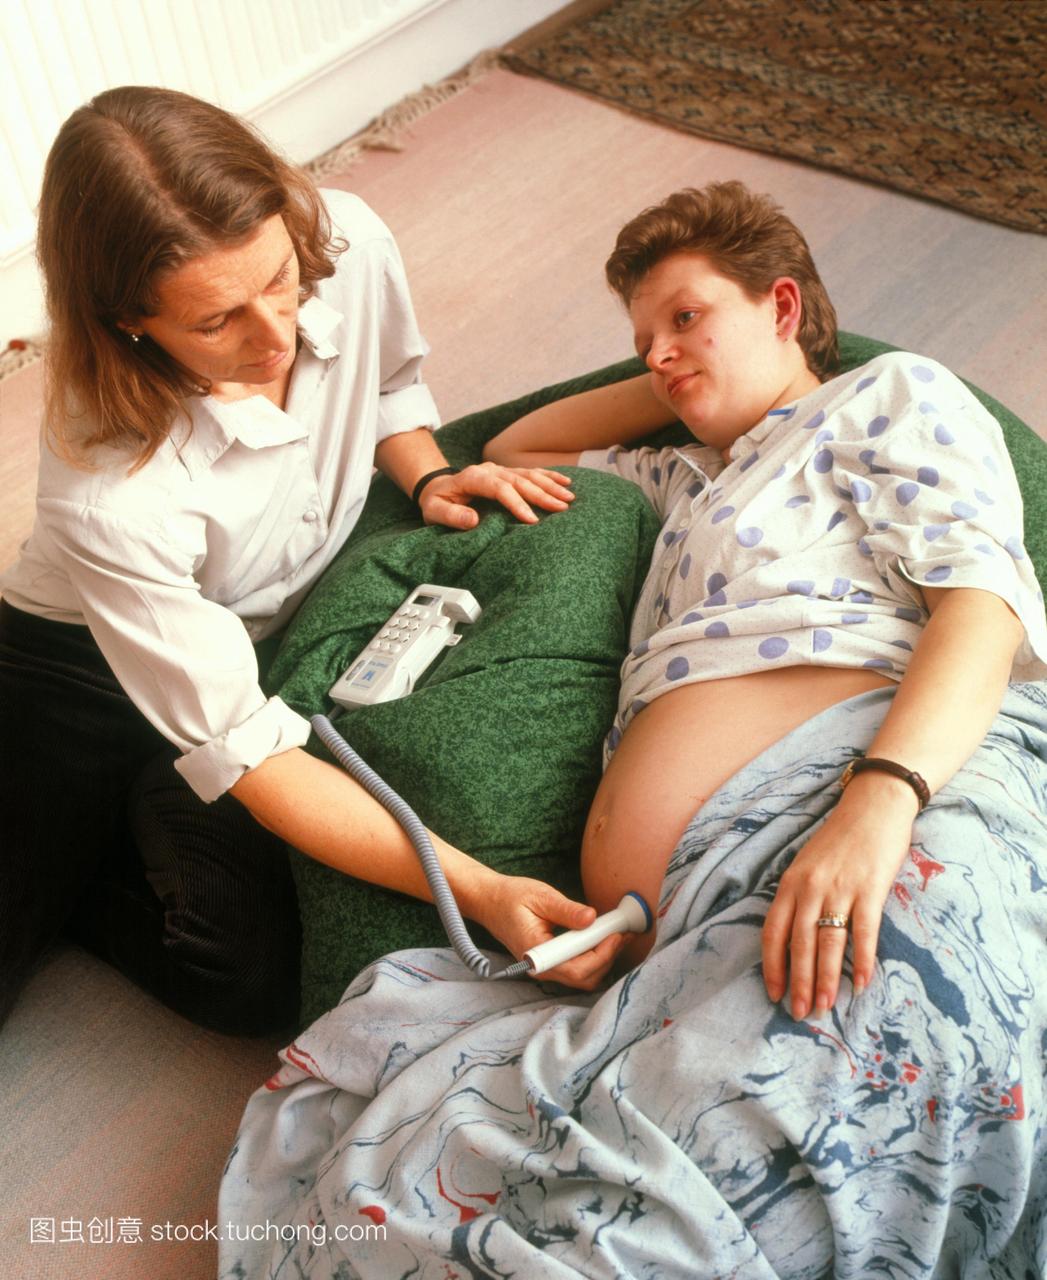 模型发布。胎儿多普勒超声检查。助产士检查胎